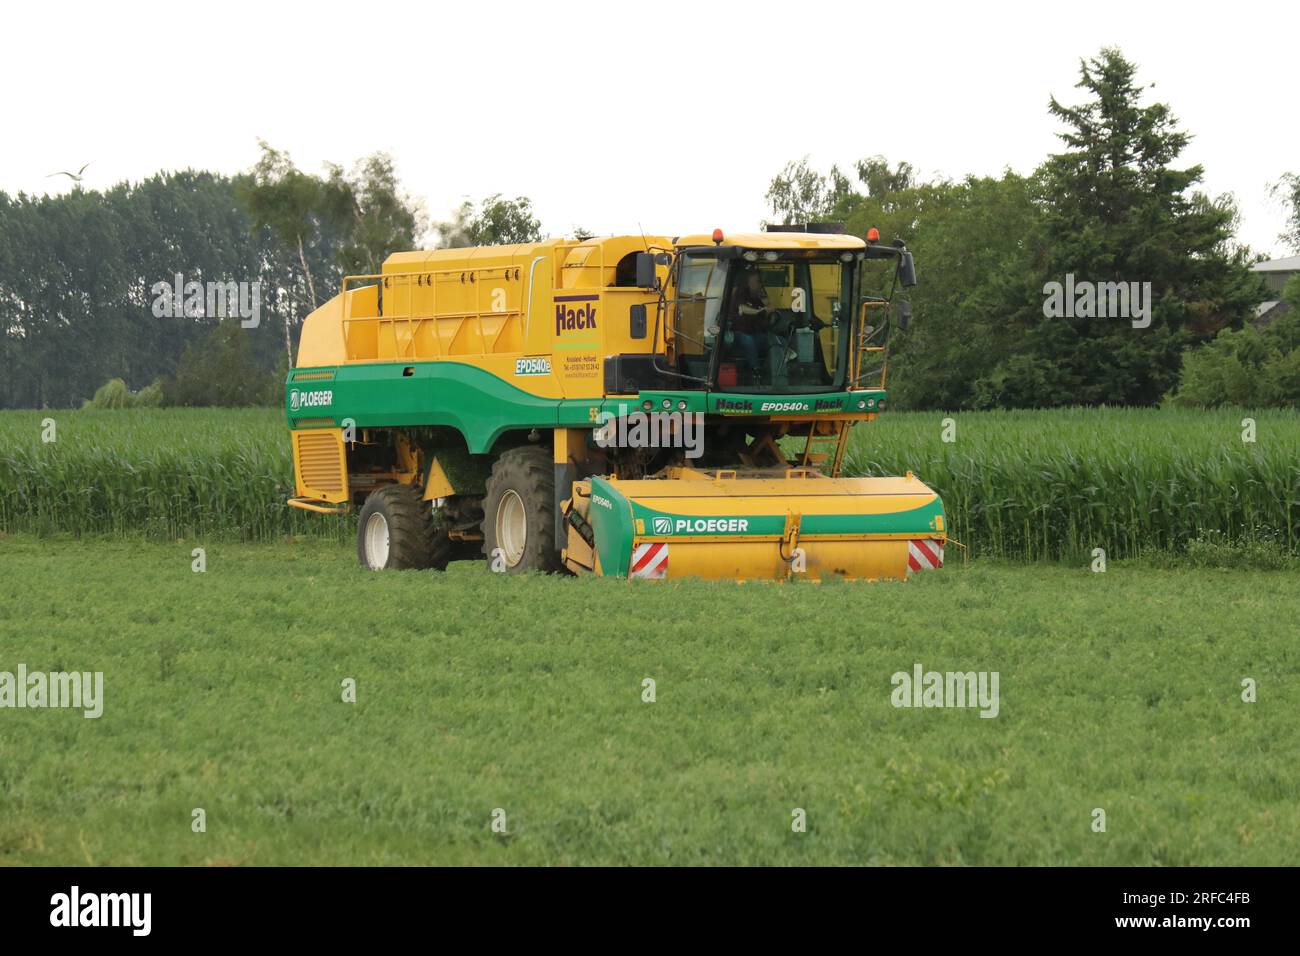 Im Sommer erntet eine Erbsenerntemaschine in holland auf einem grünen Feld Erbsen Stockfoto